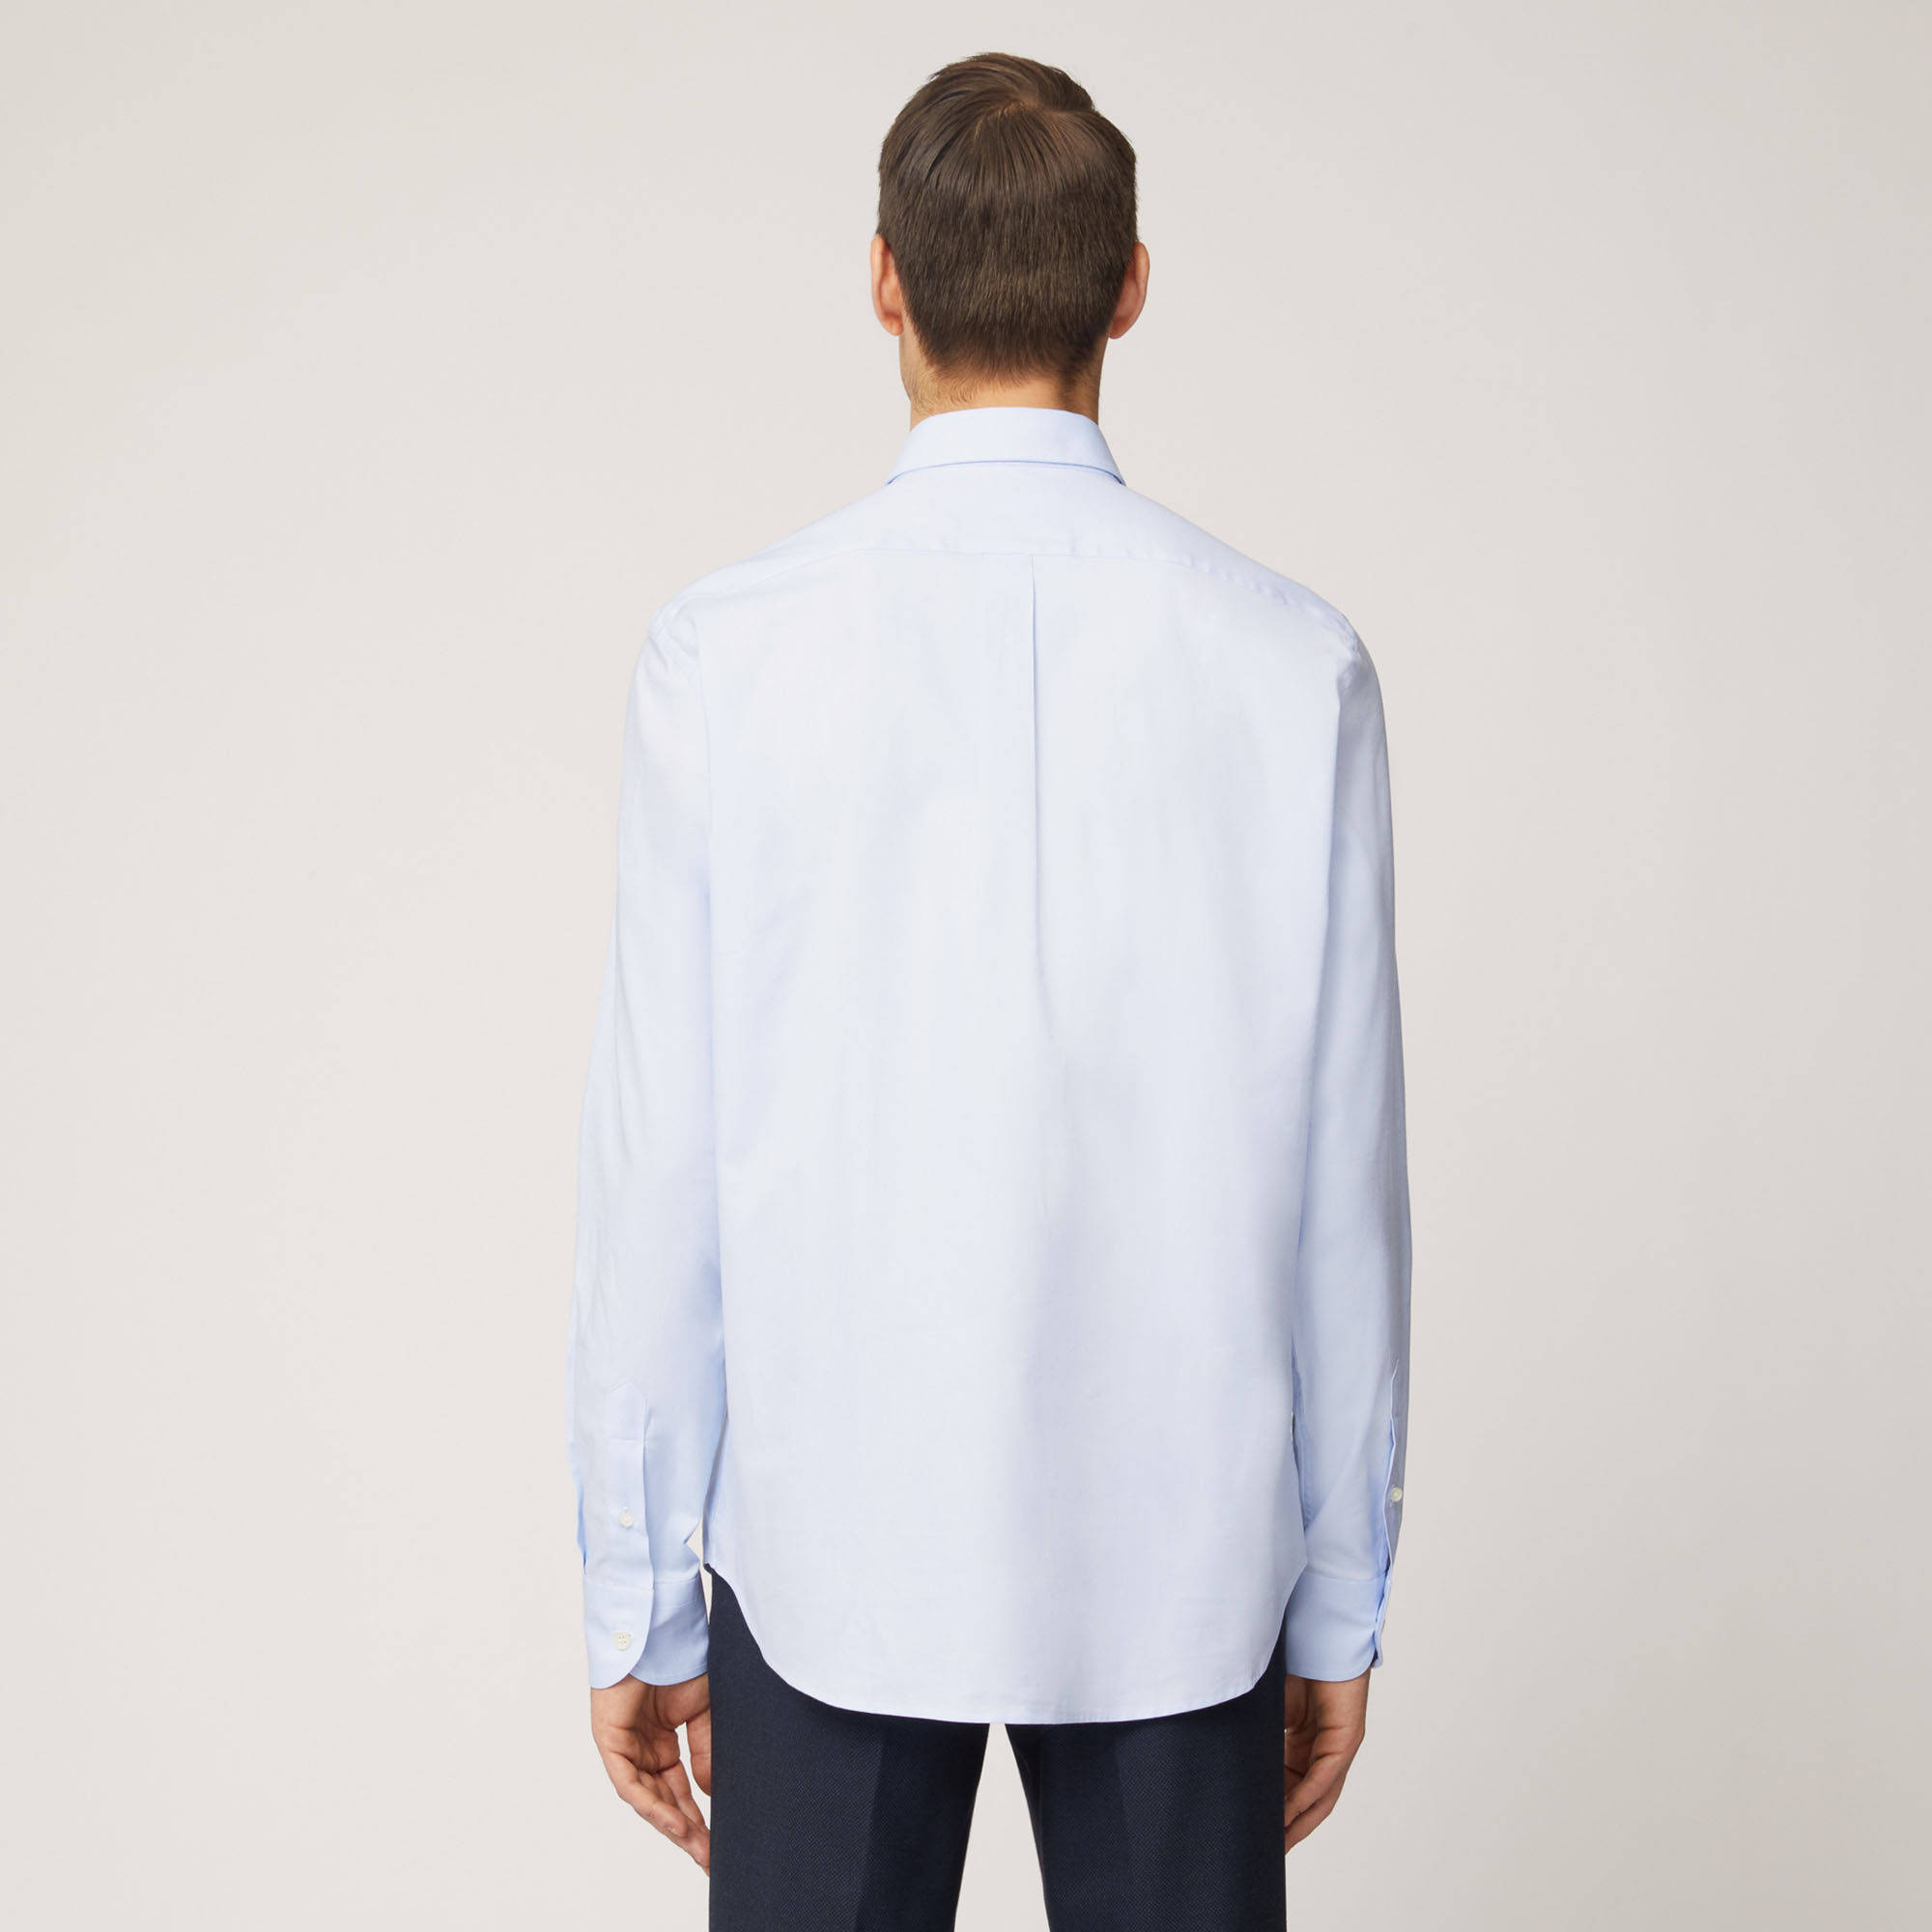 Camicia In Cotone Con Collo Con Bottoncini, Azzurro, large